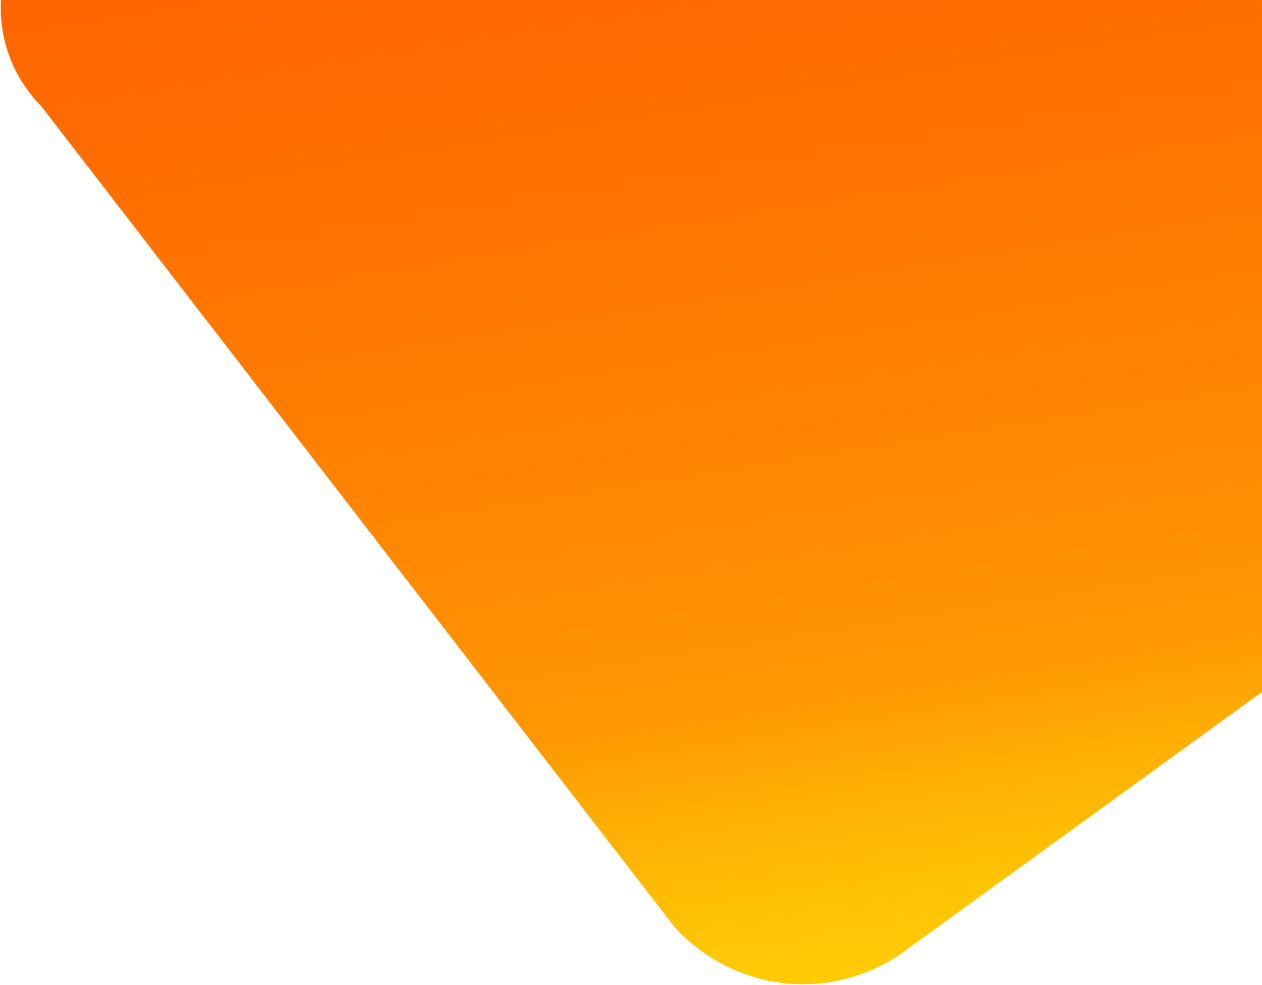 Imagen decorativa con forma geométrica en color naranja